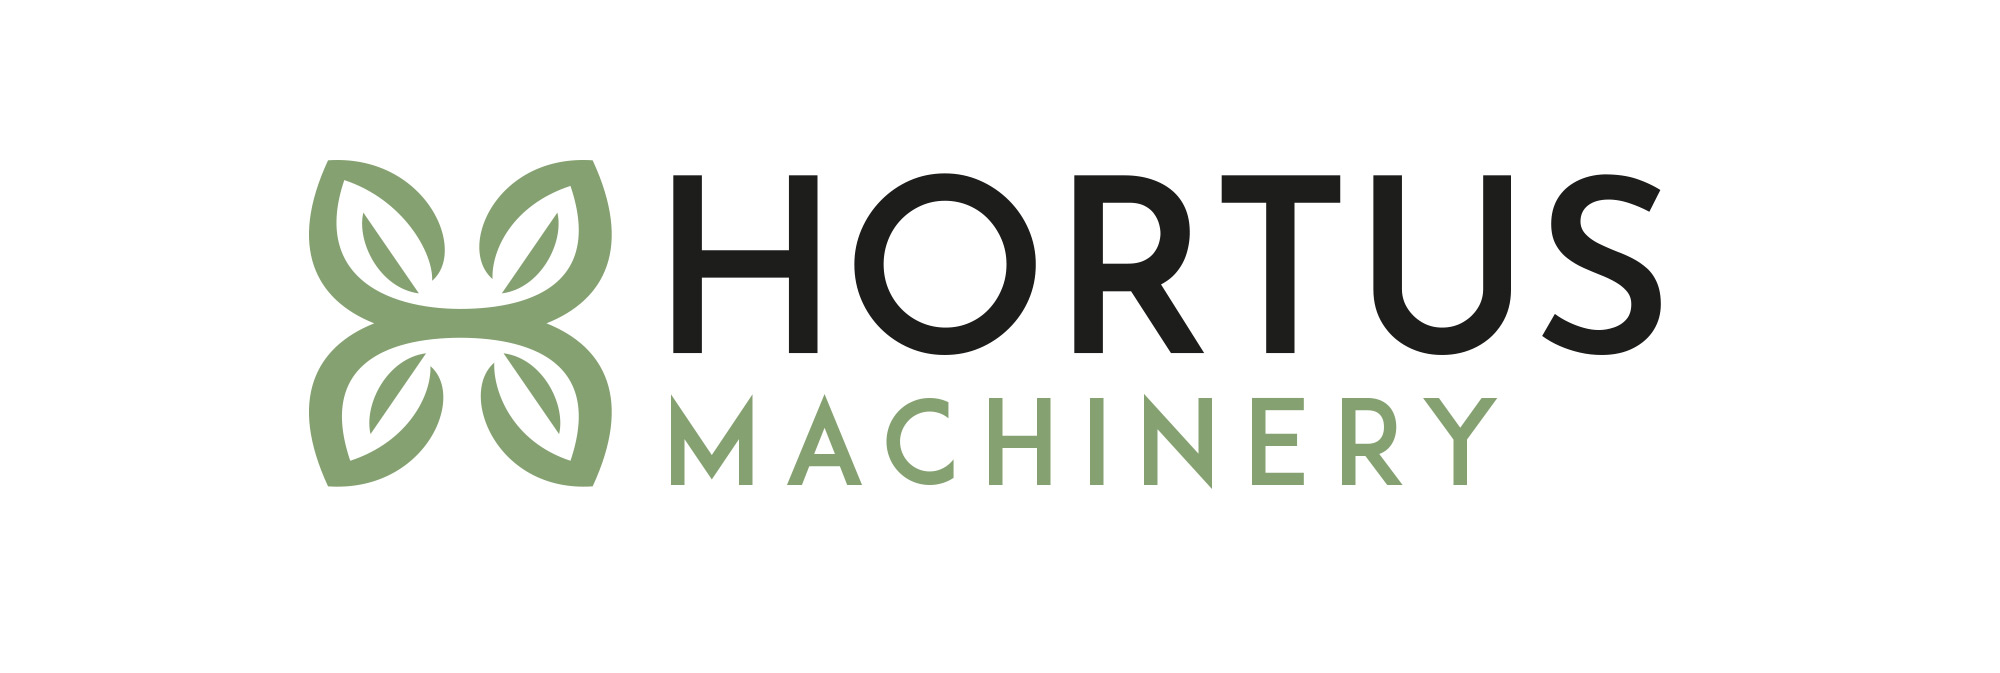 Hortus Machinery